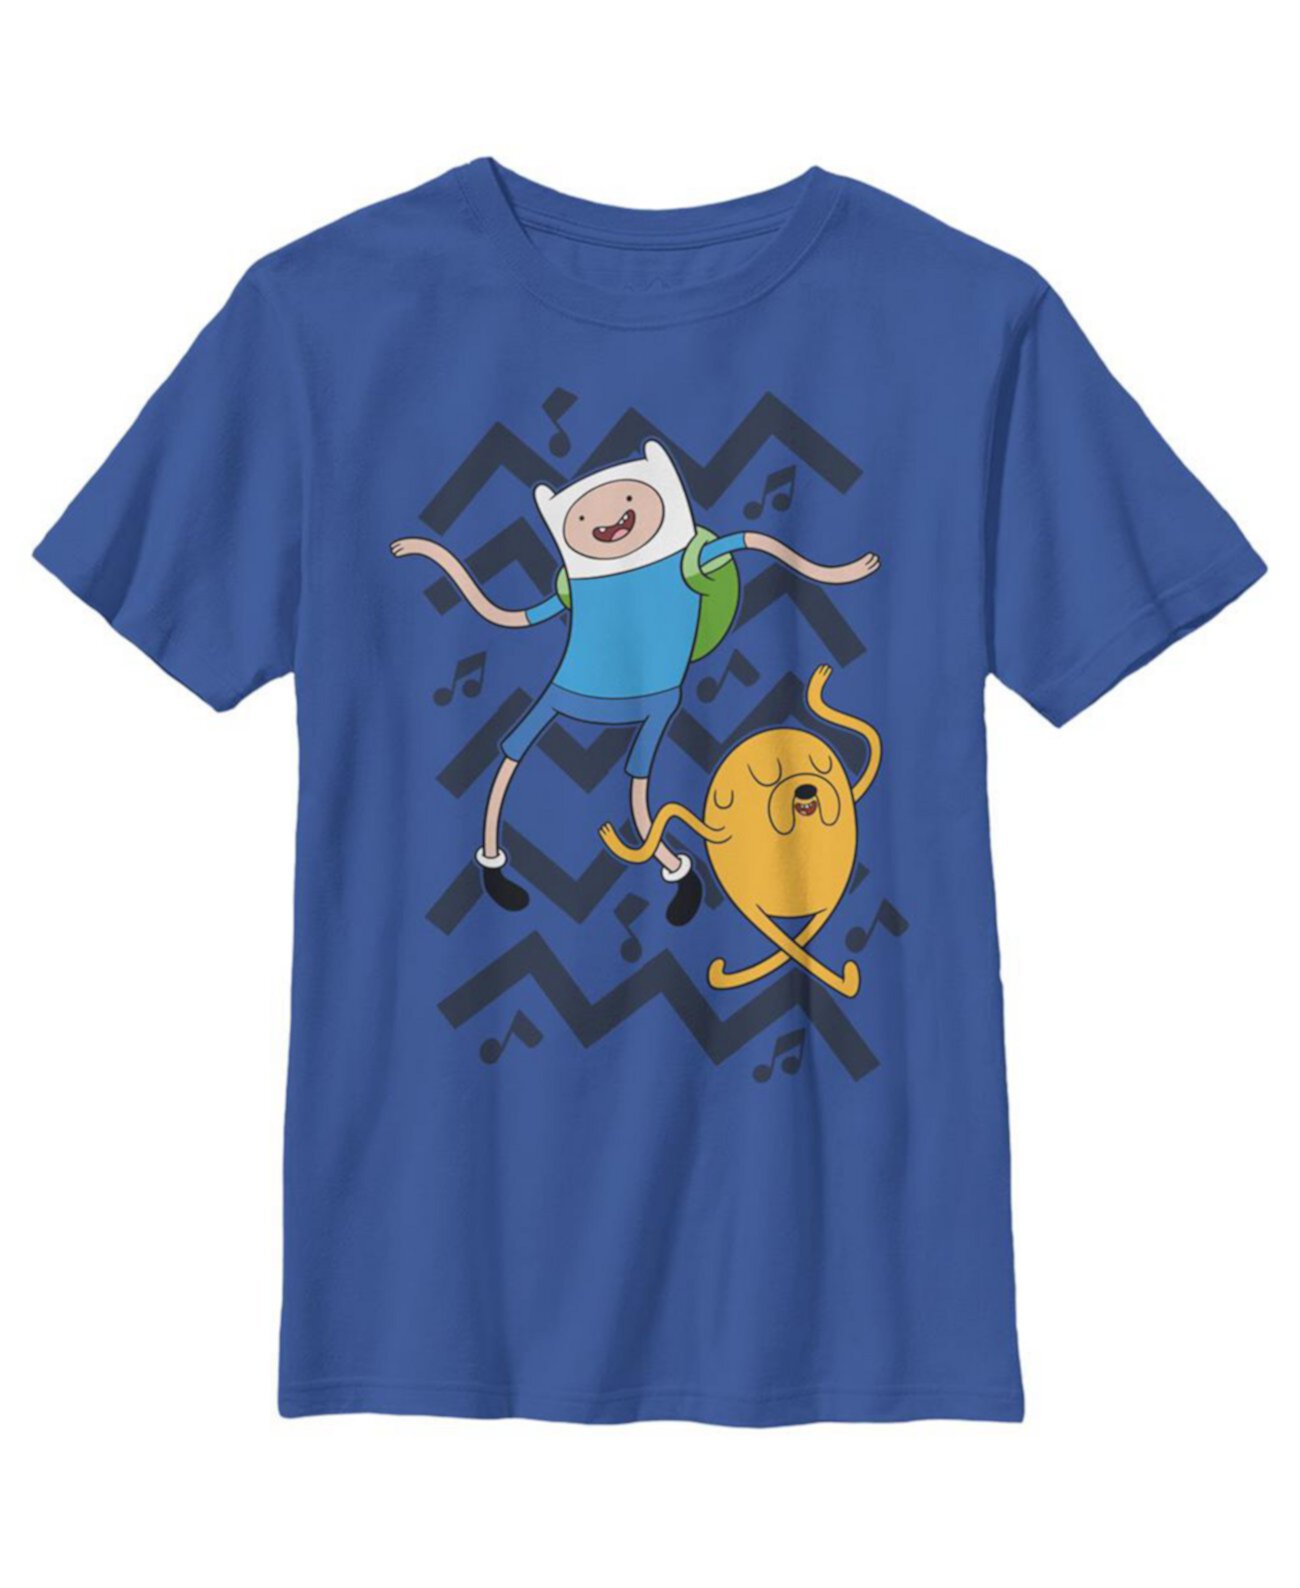 Детская футболка «Время приключений Финн и Джейк» для мальчиков Cartoon Network